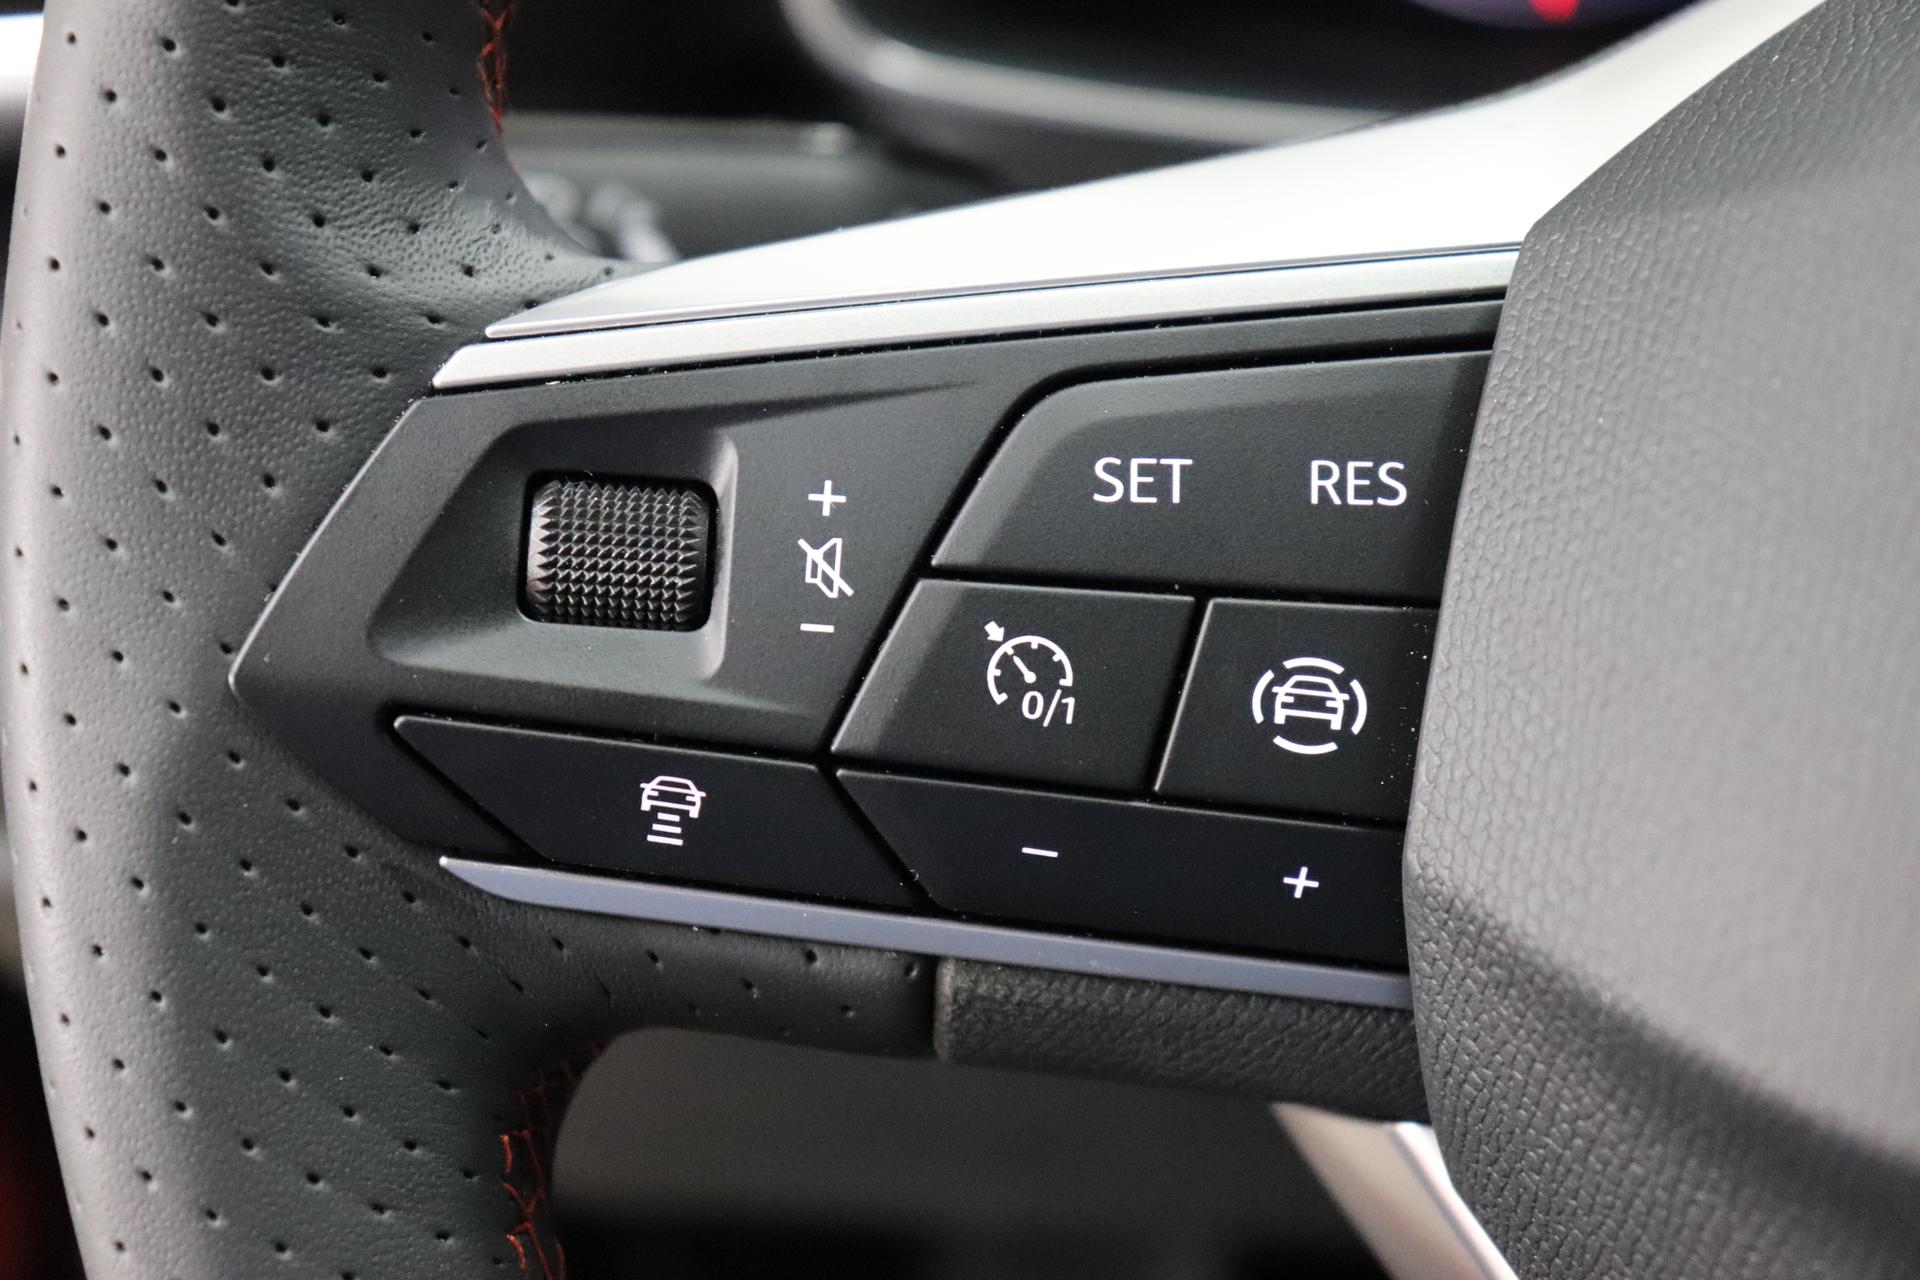 Seat Leon FR 1,5l 96 kW 131PS 16V TSI ACT Navigationssystem,  Rückfahrkamera, 3 Zonen Klimaautomatik, Adaptive Geschwindigkeitsregelung,  Spurhalteassistent, Sitzheizung, Lenkradheizung, 17Zoll Leichtmetallfelgen,  Apple CarPlay, Android Auto uvm